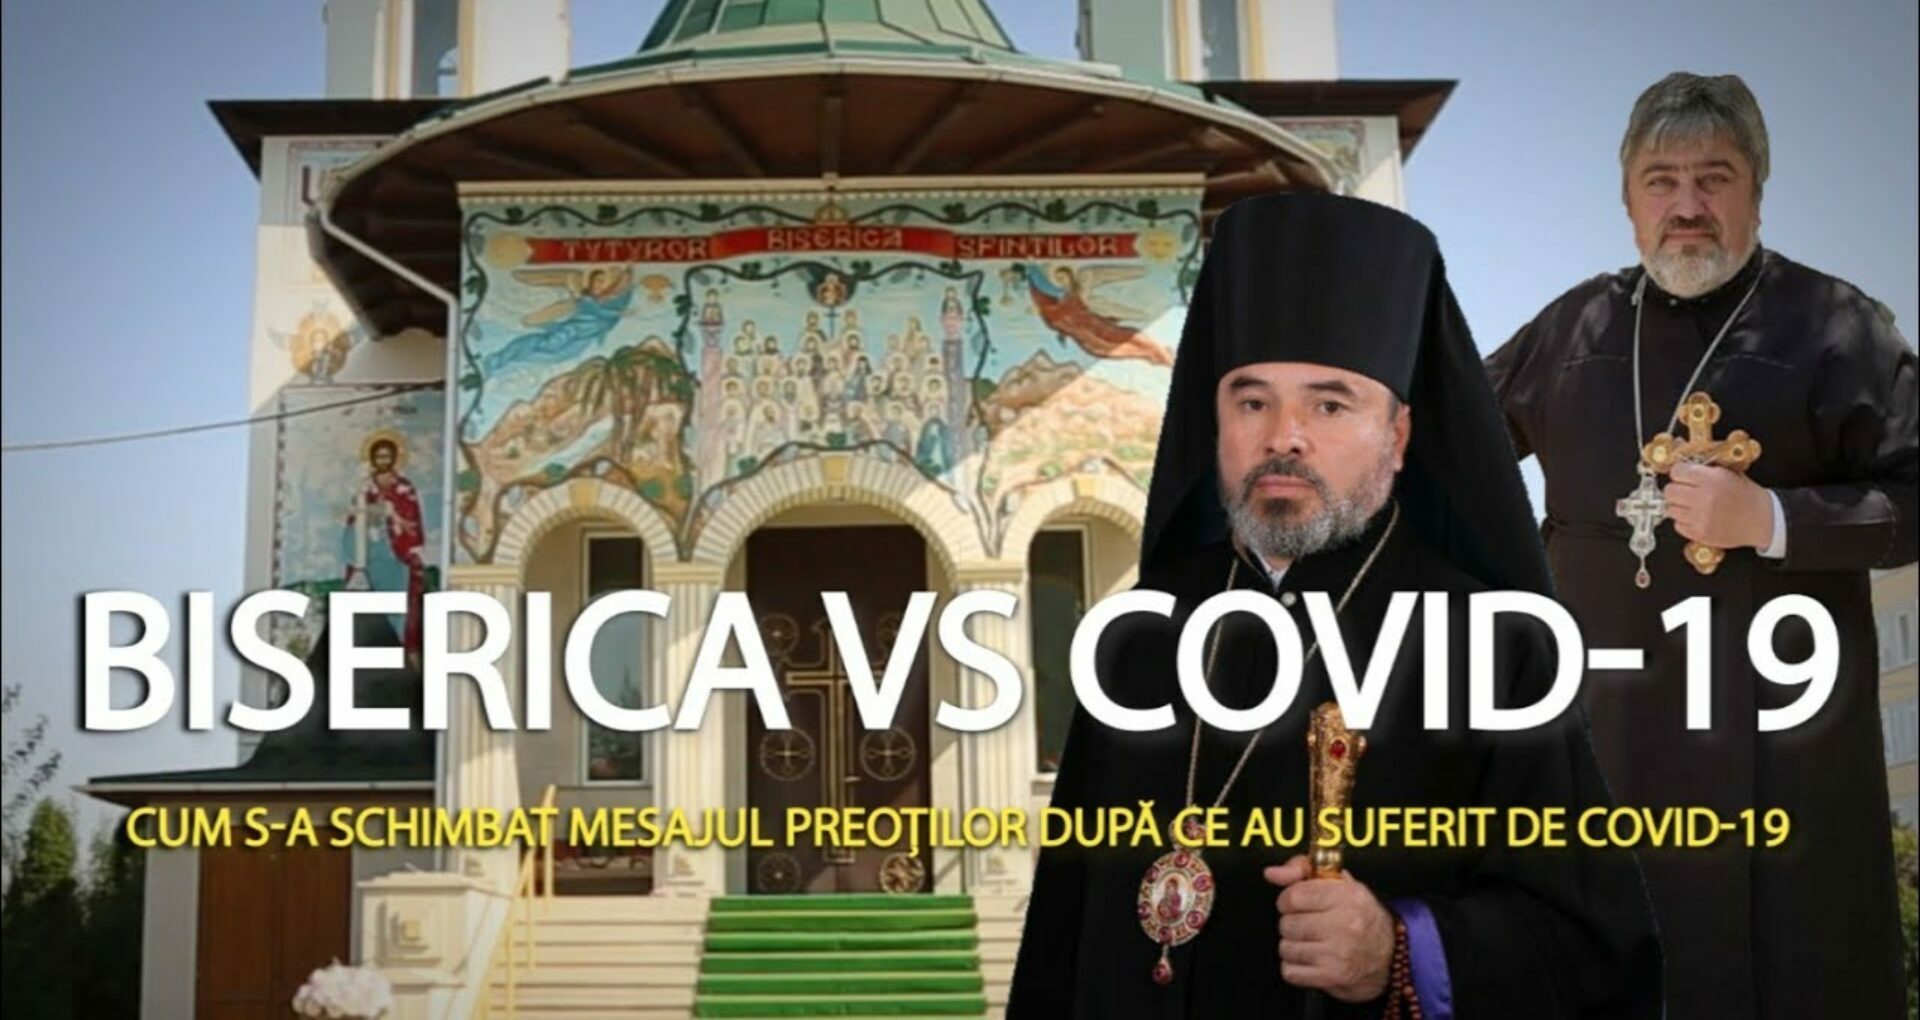 The Moldovan Church VS COVID-19